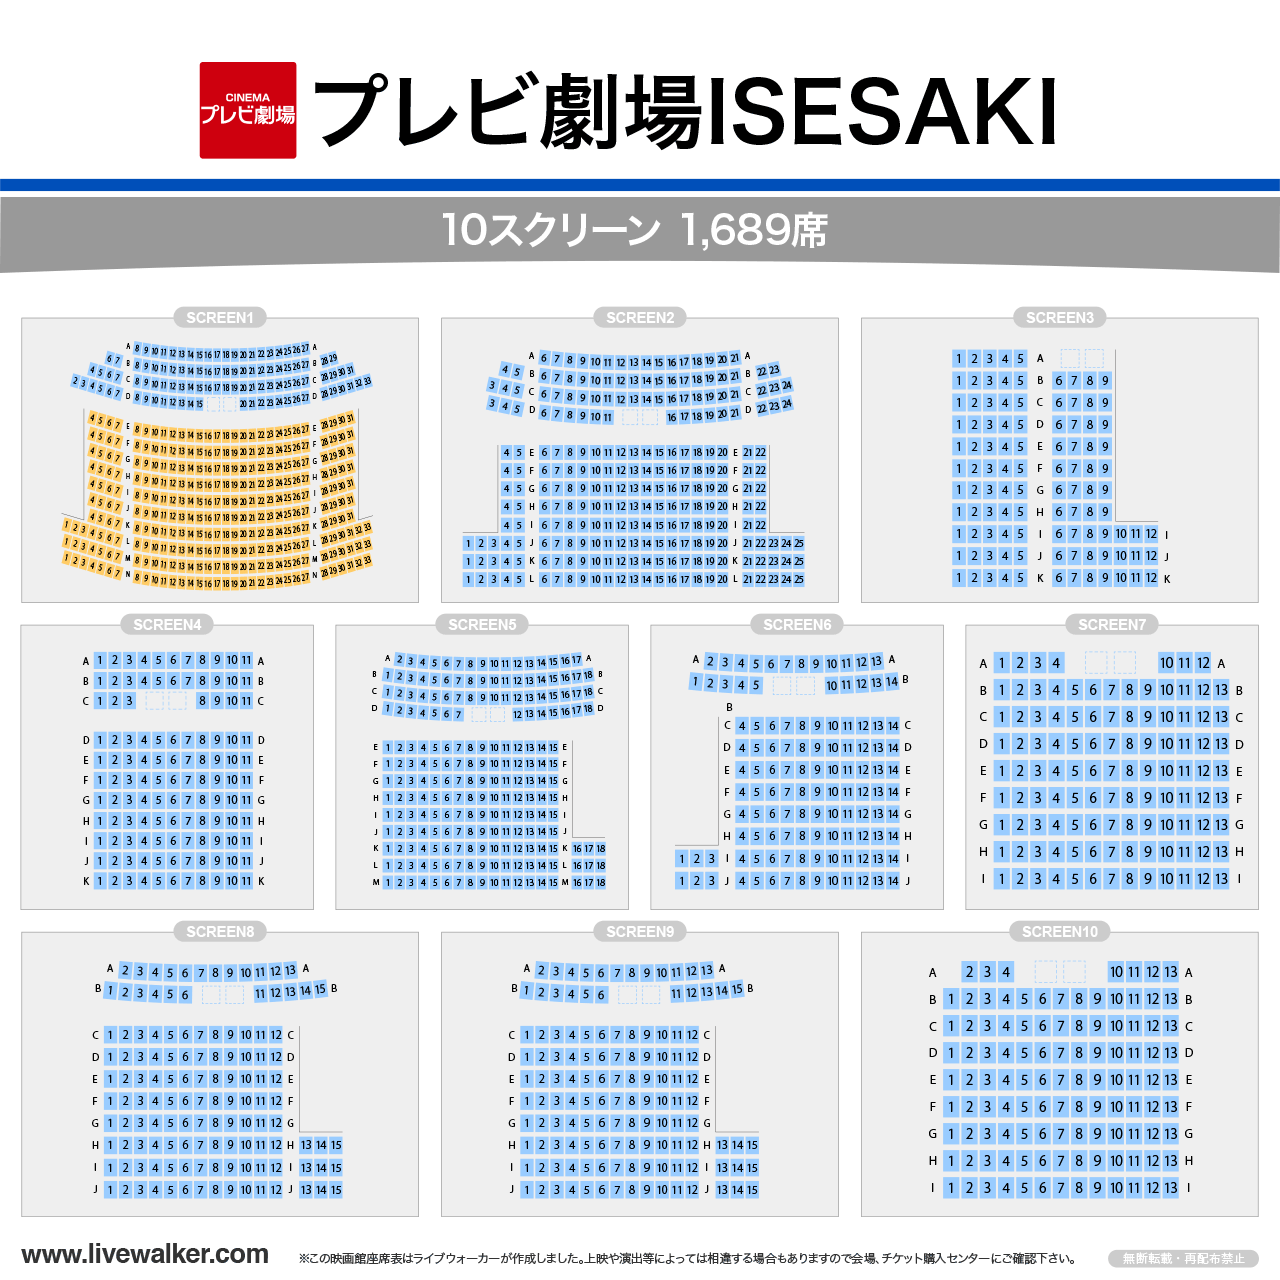 プレビ劇場ISESAKI シネマの座席表